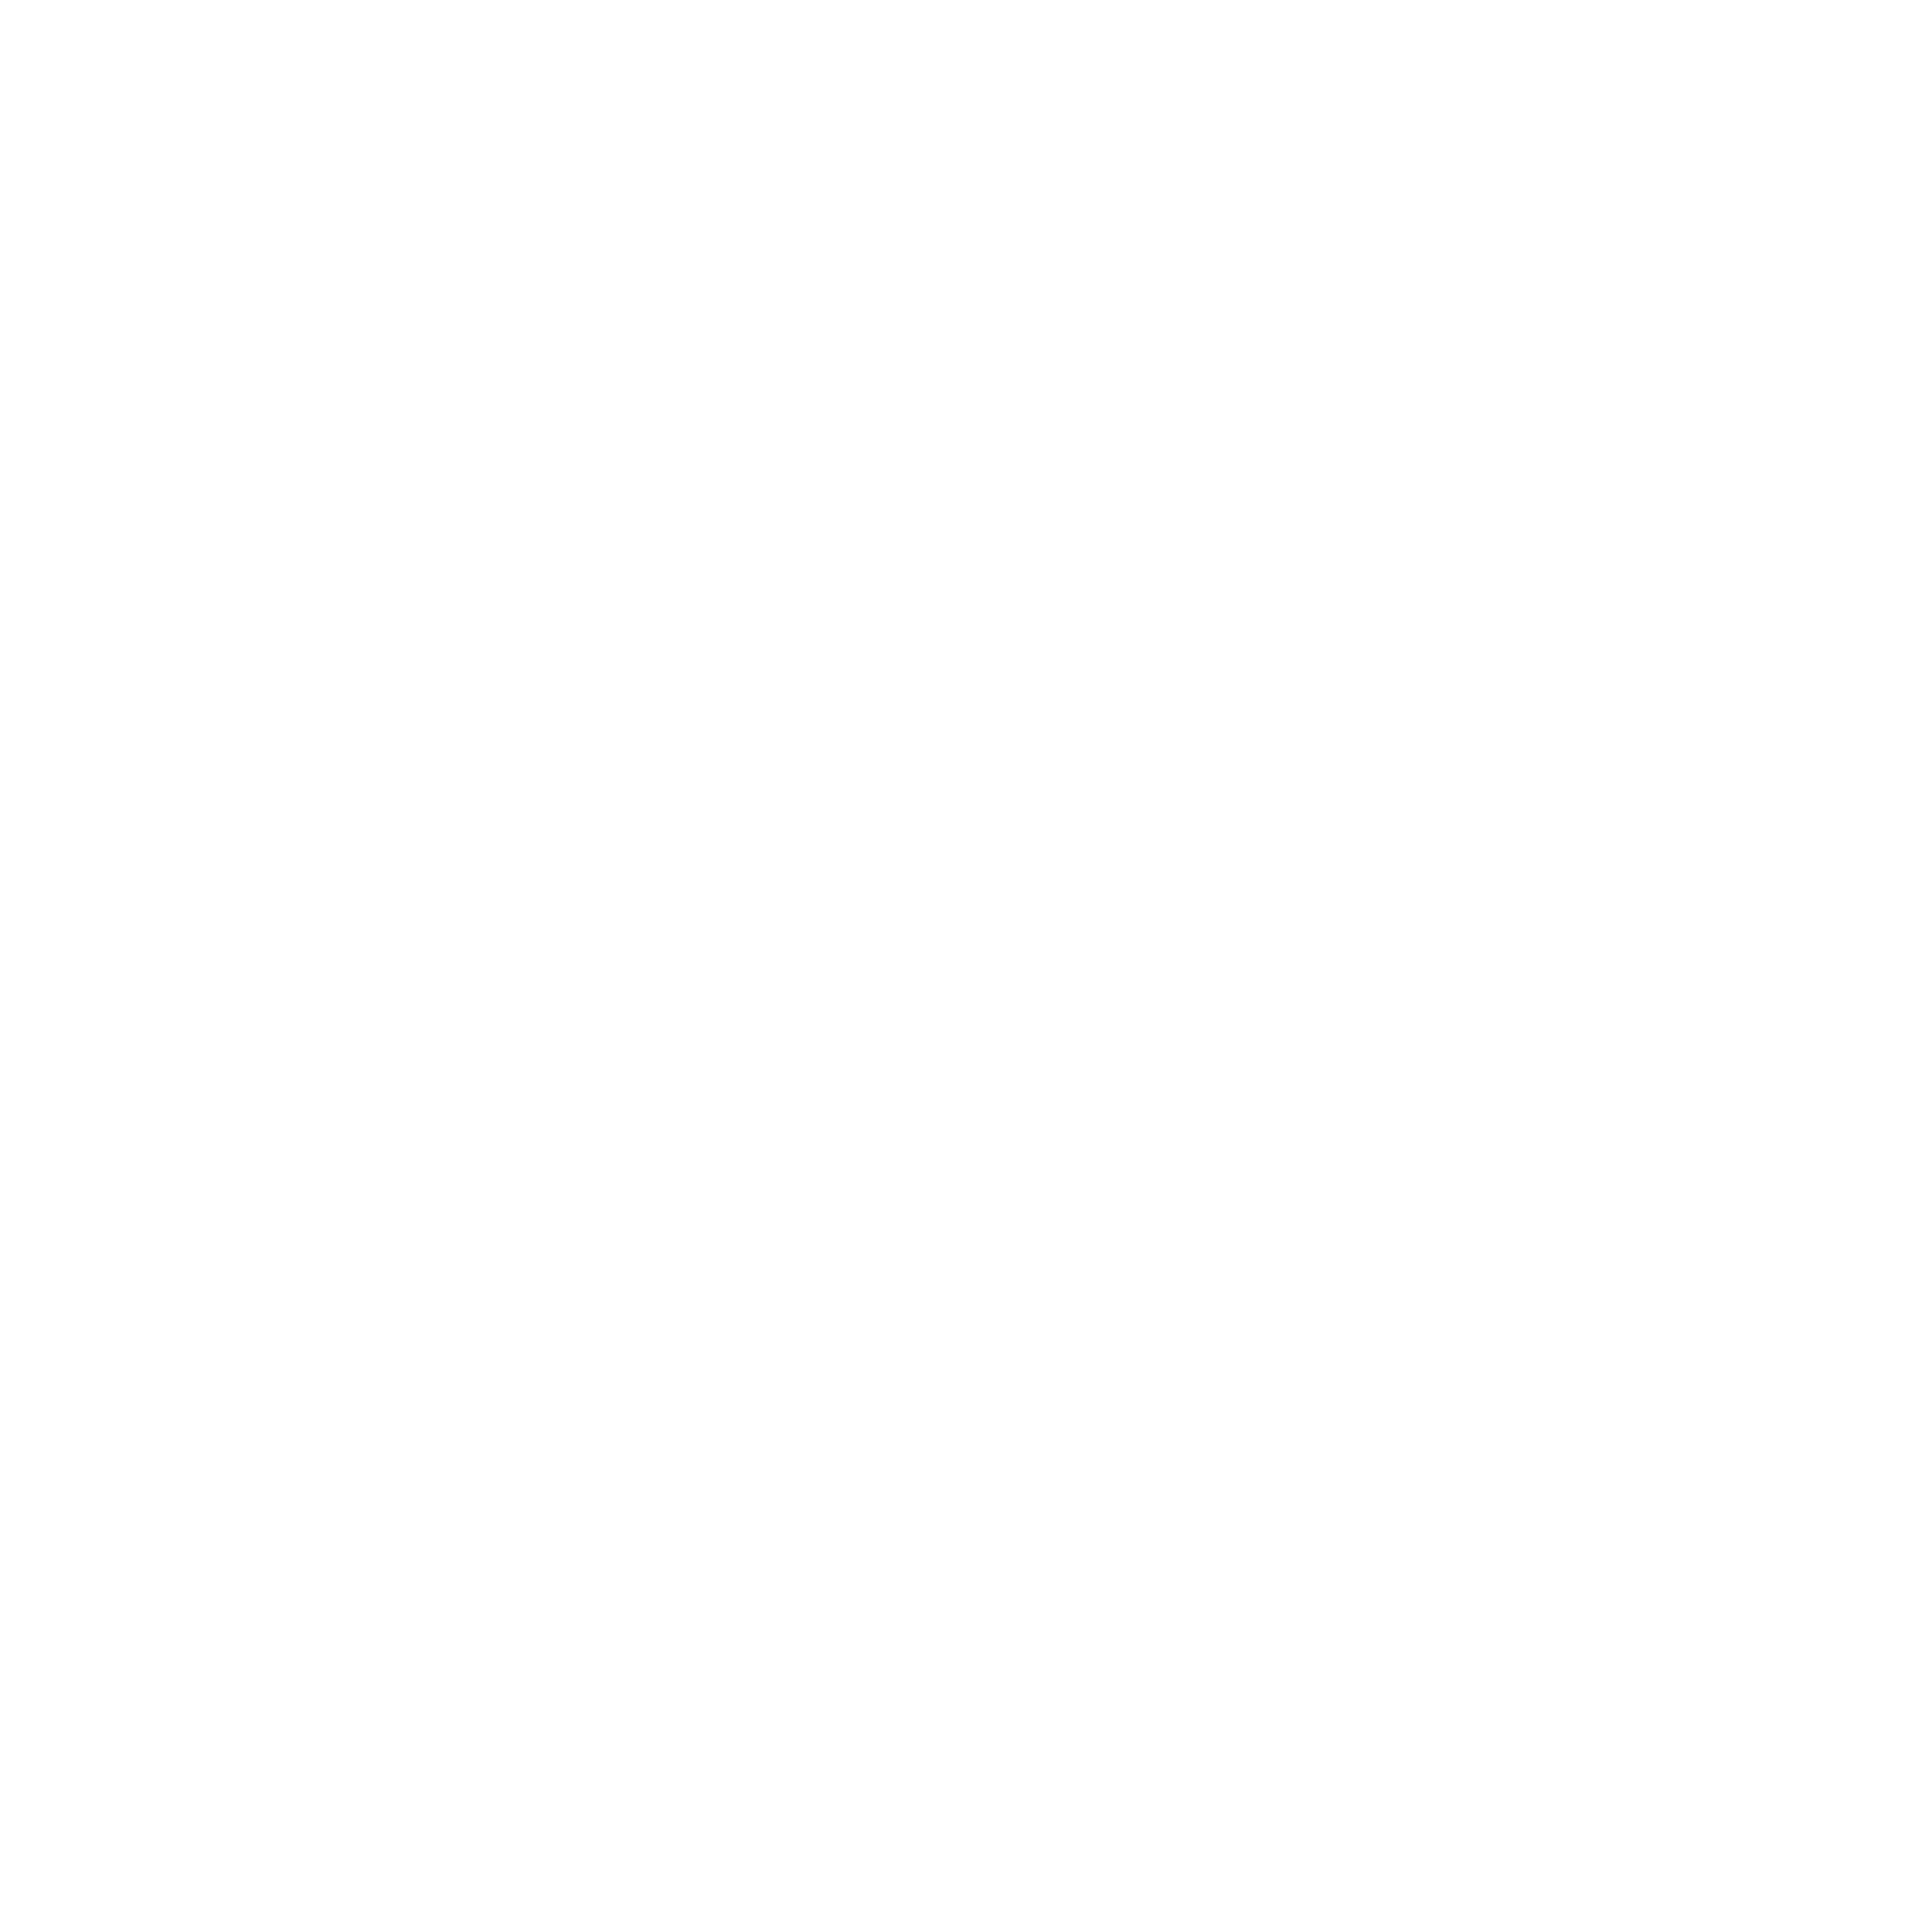 Hill Pine’s Espresso